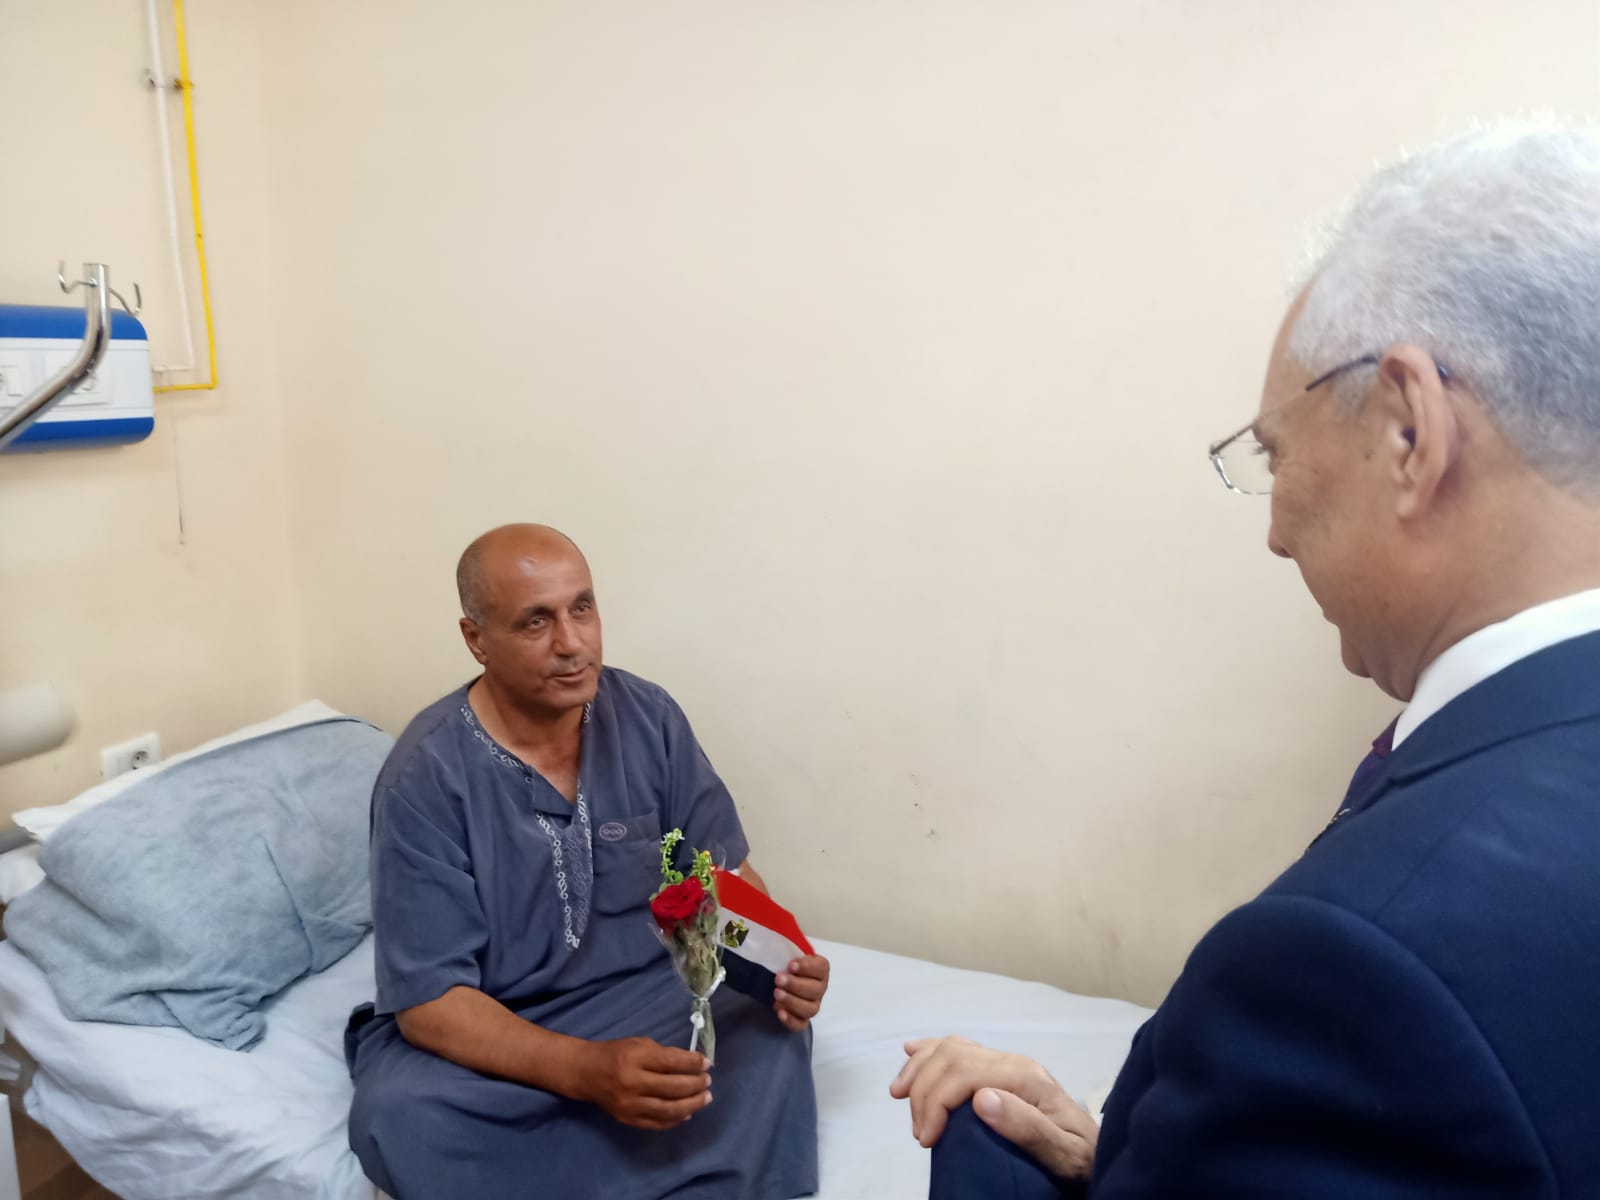 الدكتور عصام فرحات يتحدث مع أحد المرضى